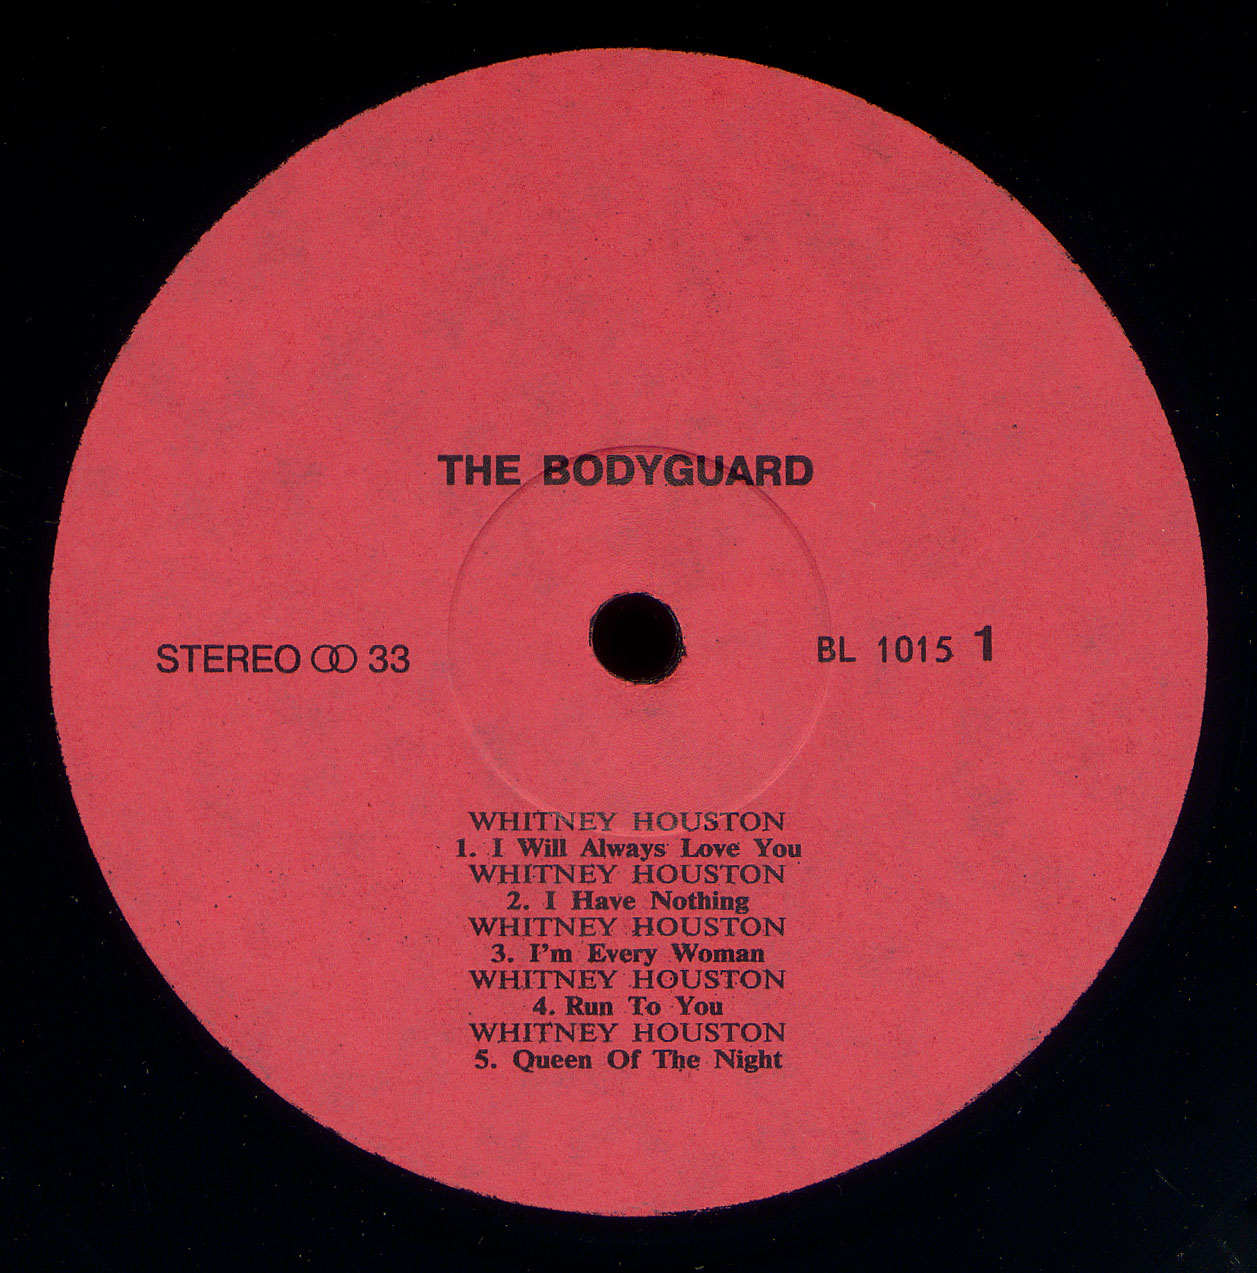 The Bodyguard (Original Soundtrack Album)